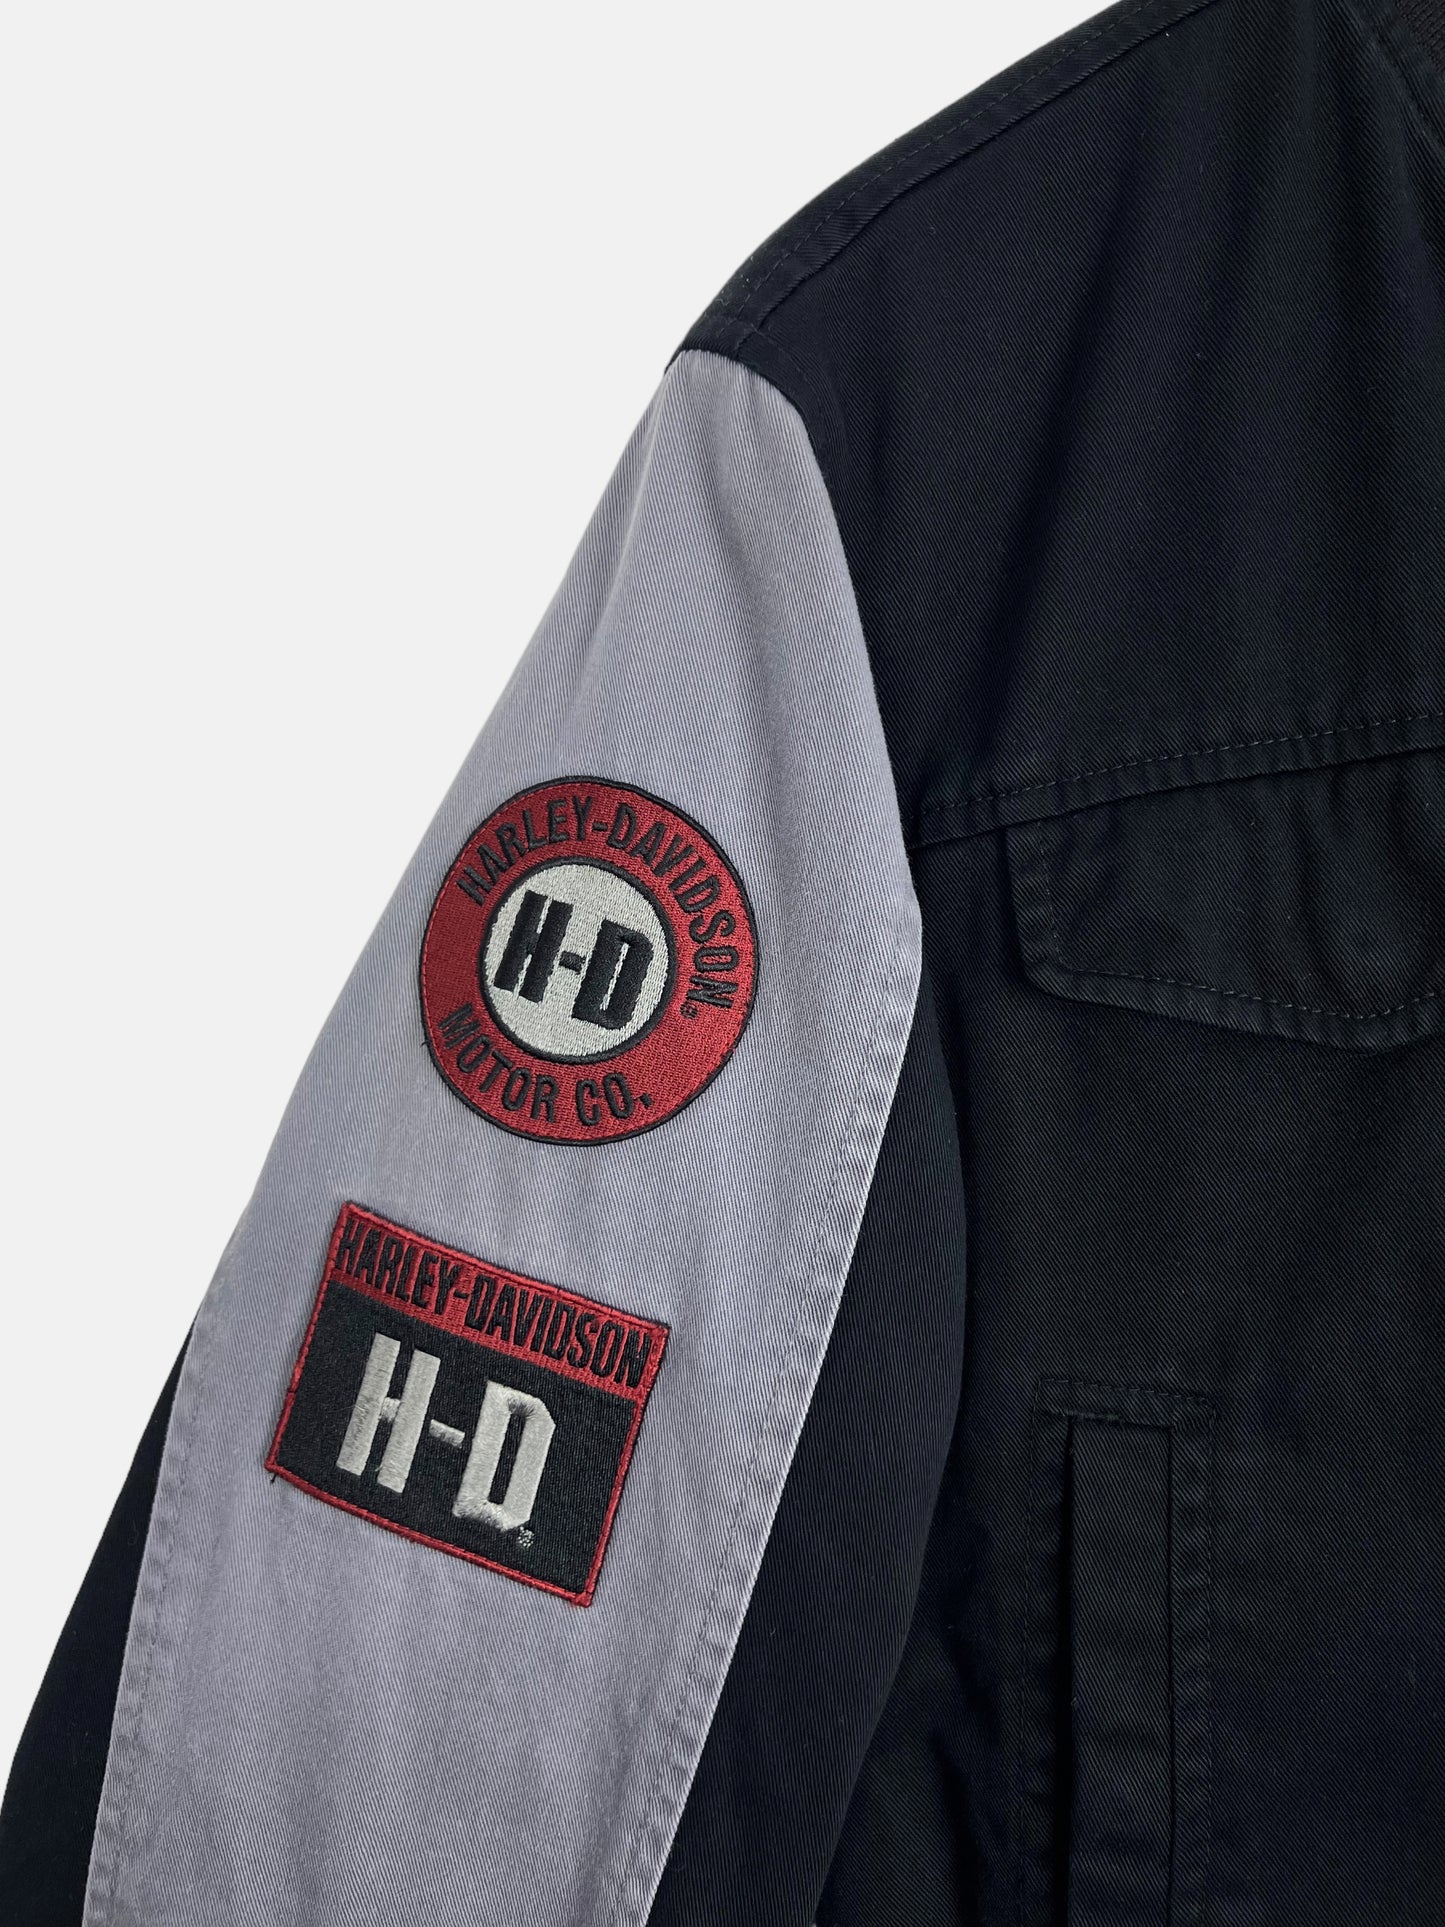 90's Harley Davidson Embroidered Jacket Size 10